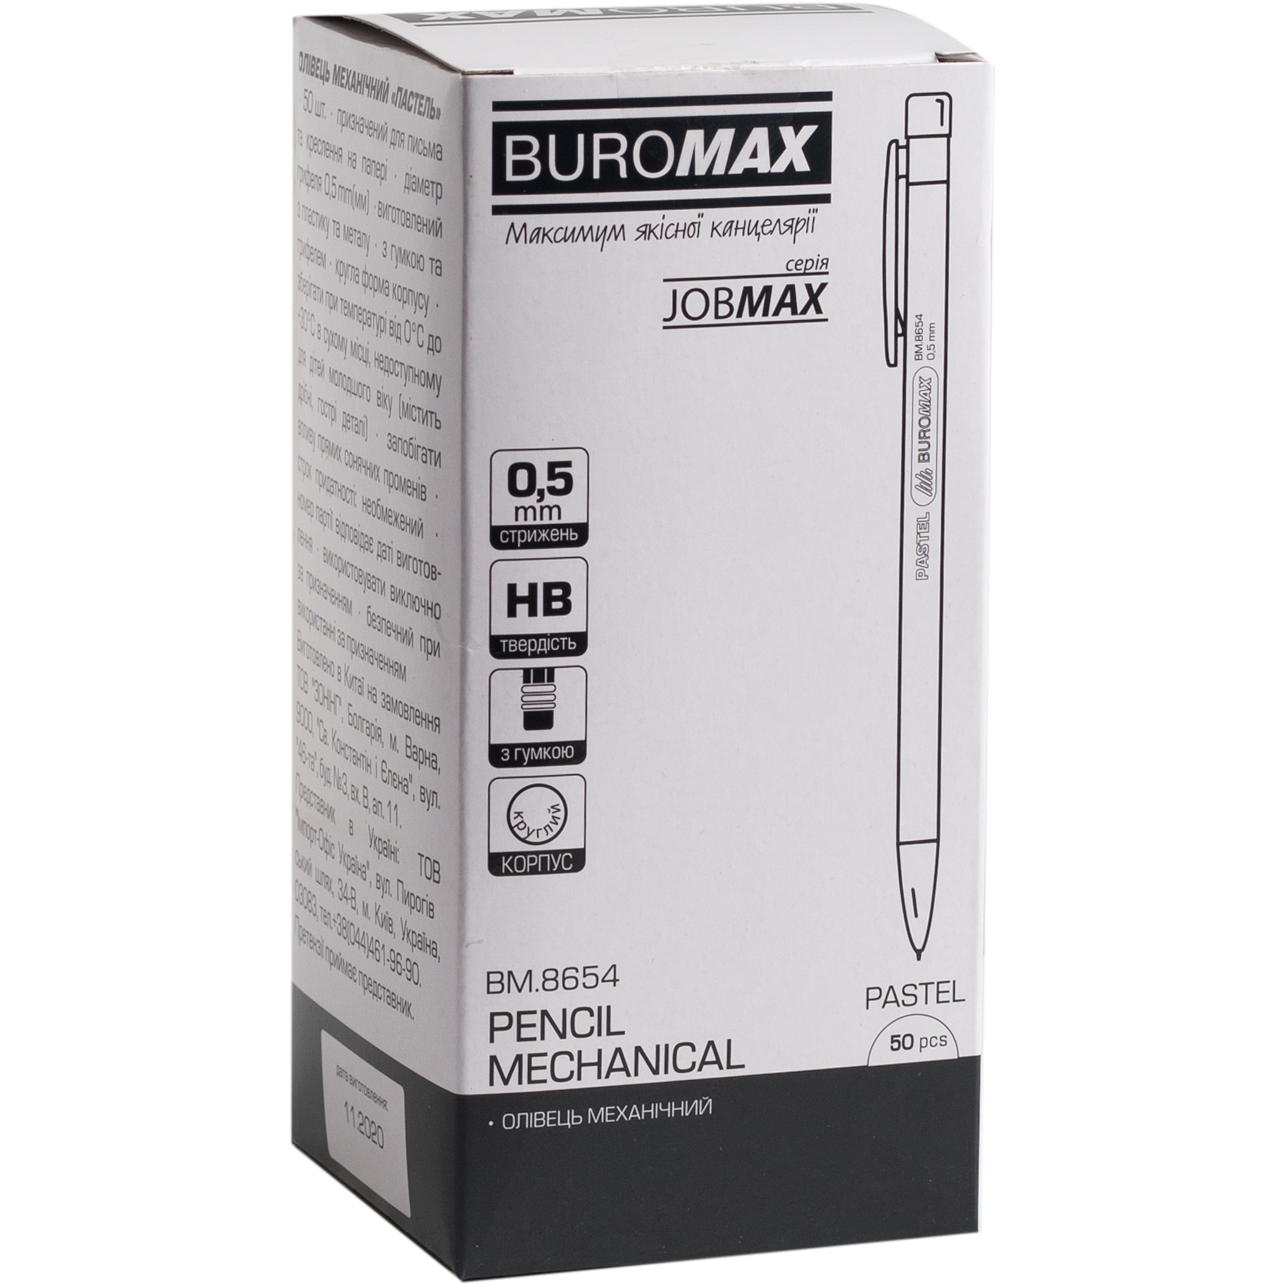 Олівець механічний Buromax Jobmax 0.5 мм зефірний (BM.8654-43) - фото 2